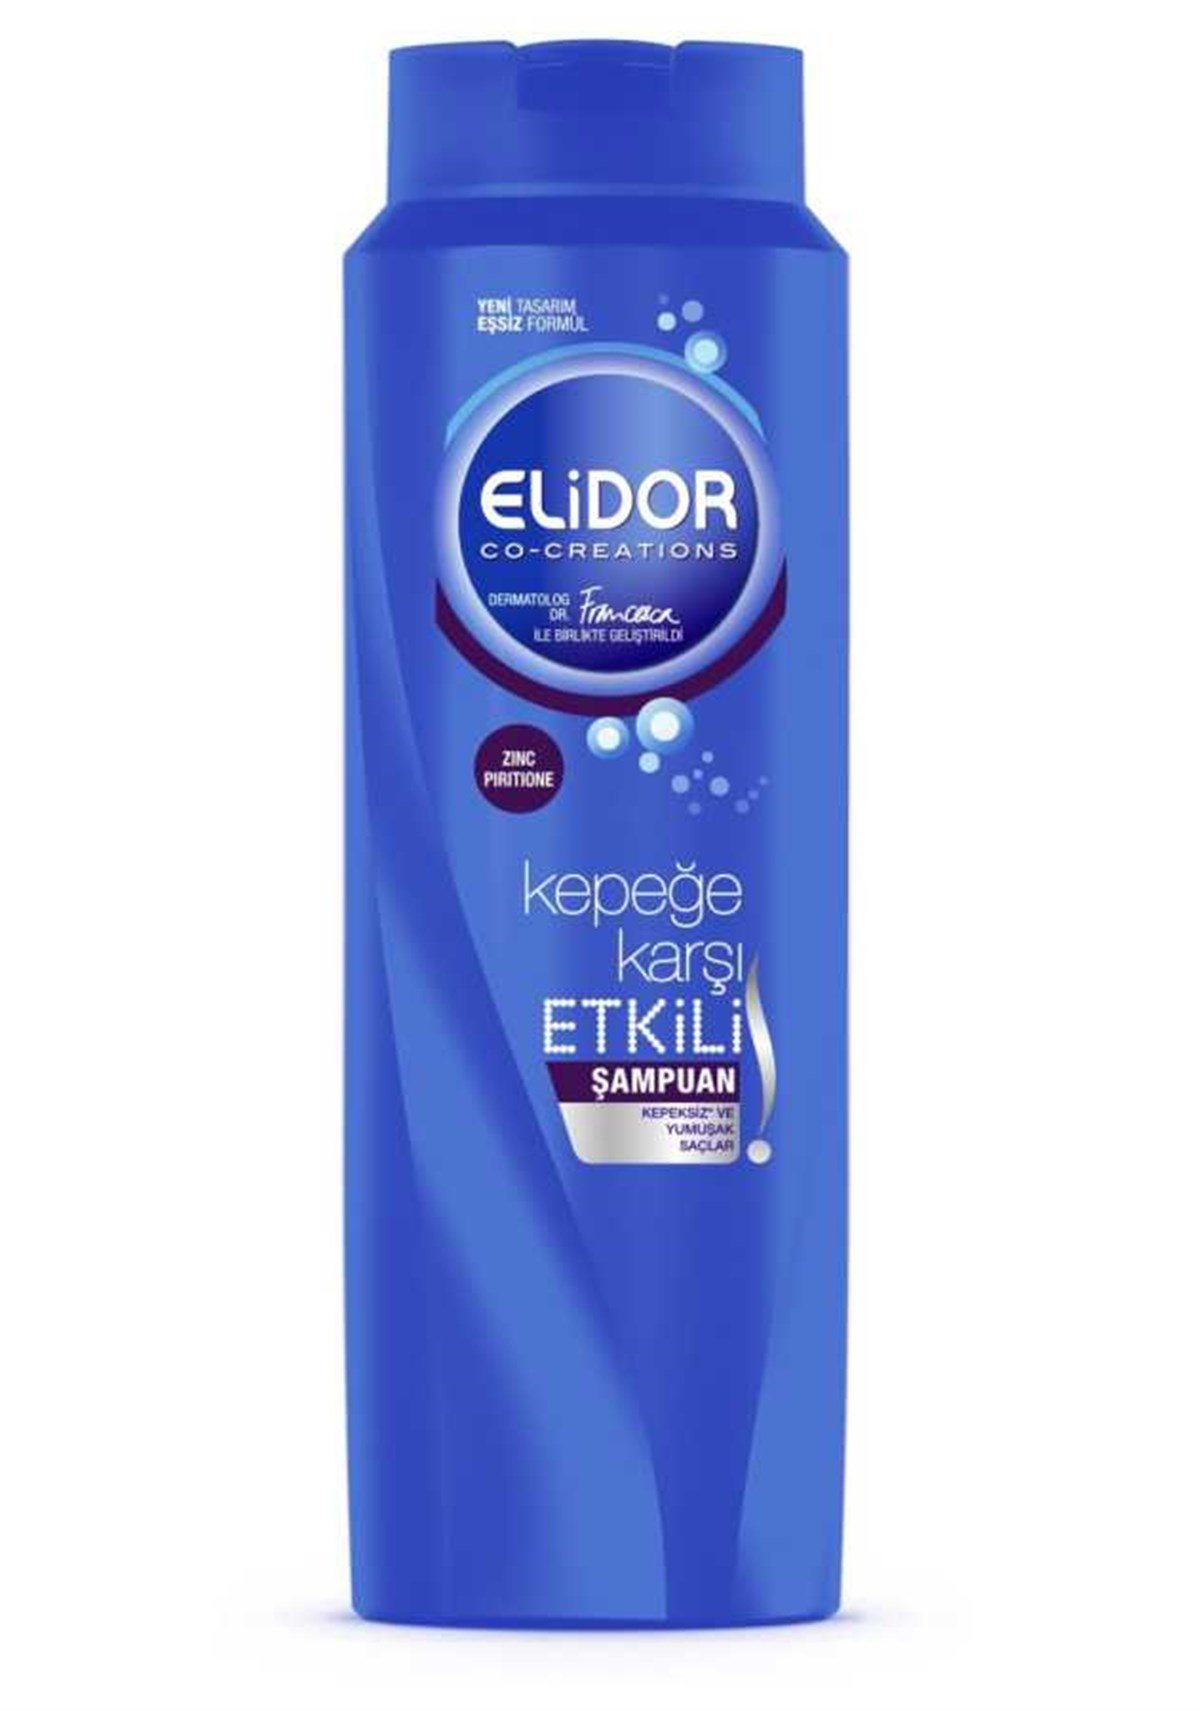 Elidor Kepeğe Karşı Etkili Şampuan 550ml Fiyatları | Dermosiparis.com